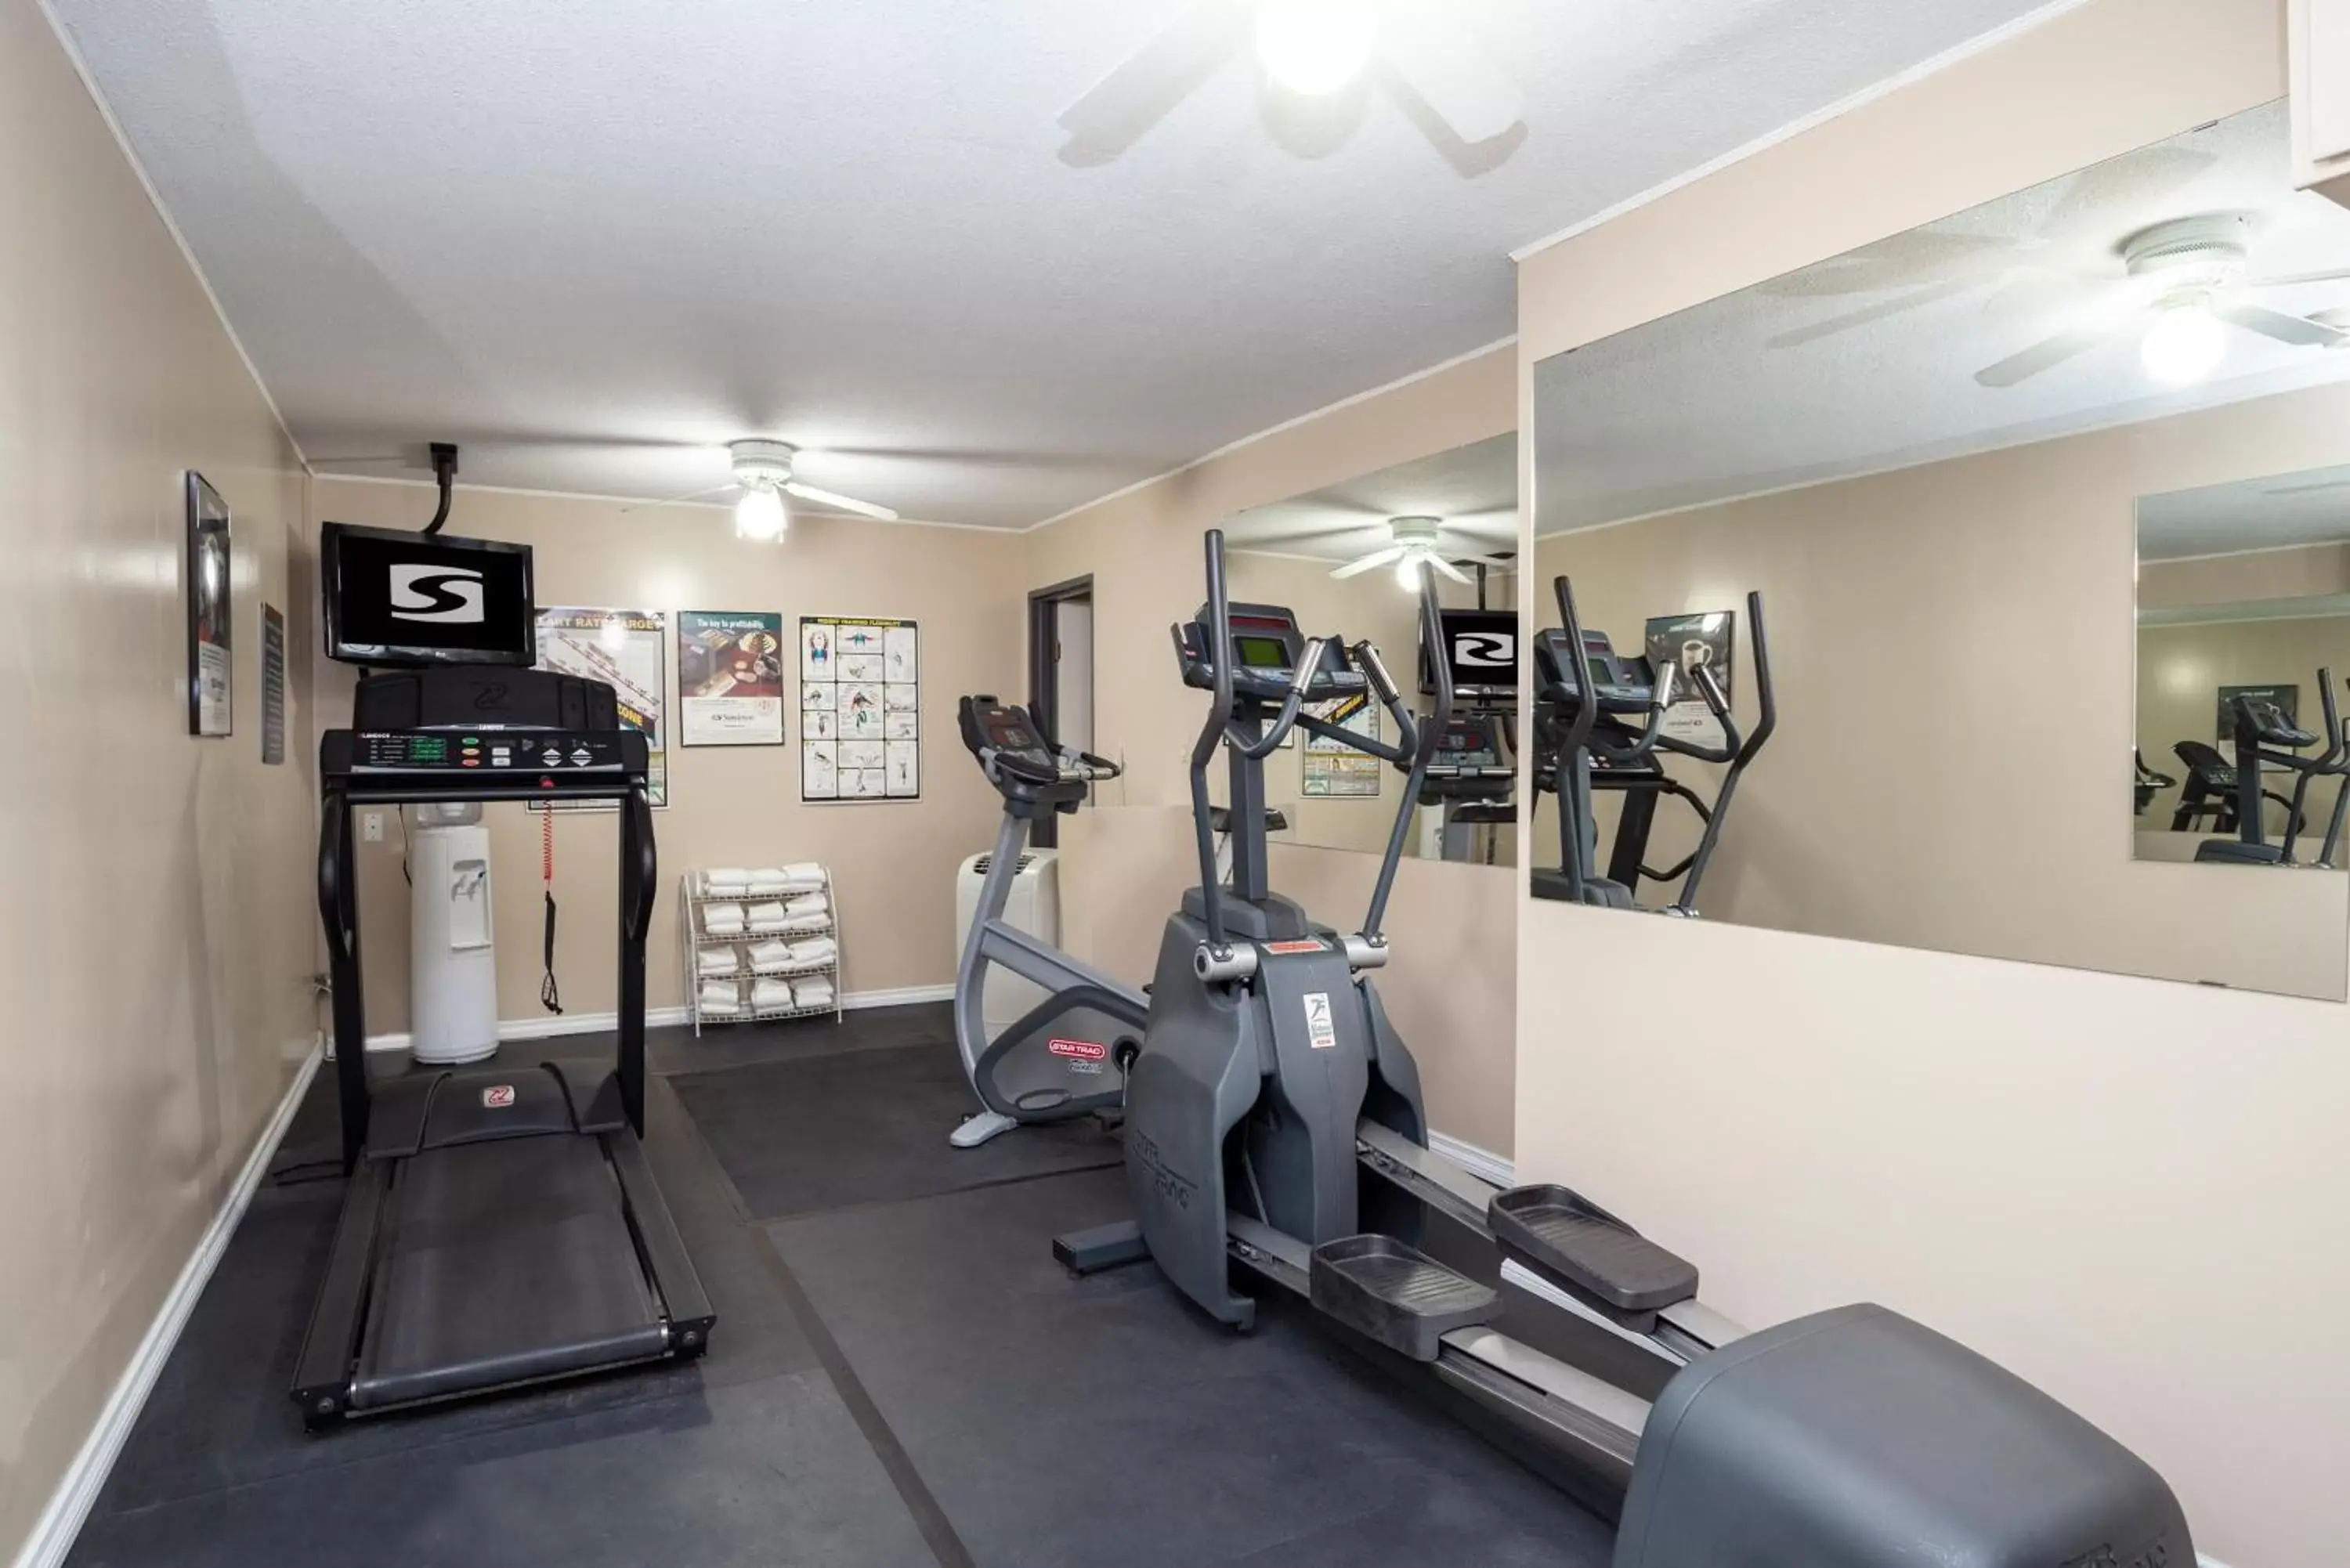 Fitness centre/facilities, Fitness Center/Facilities in Sandman Hotel Castlegar